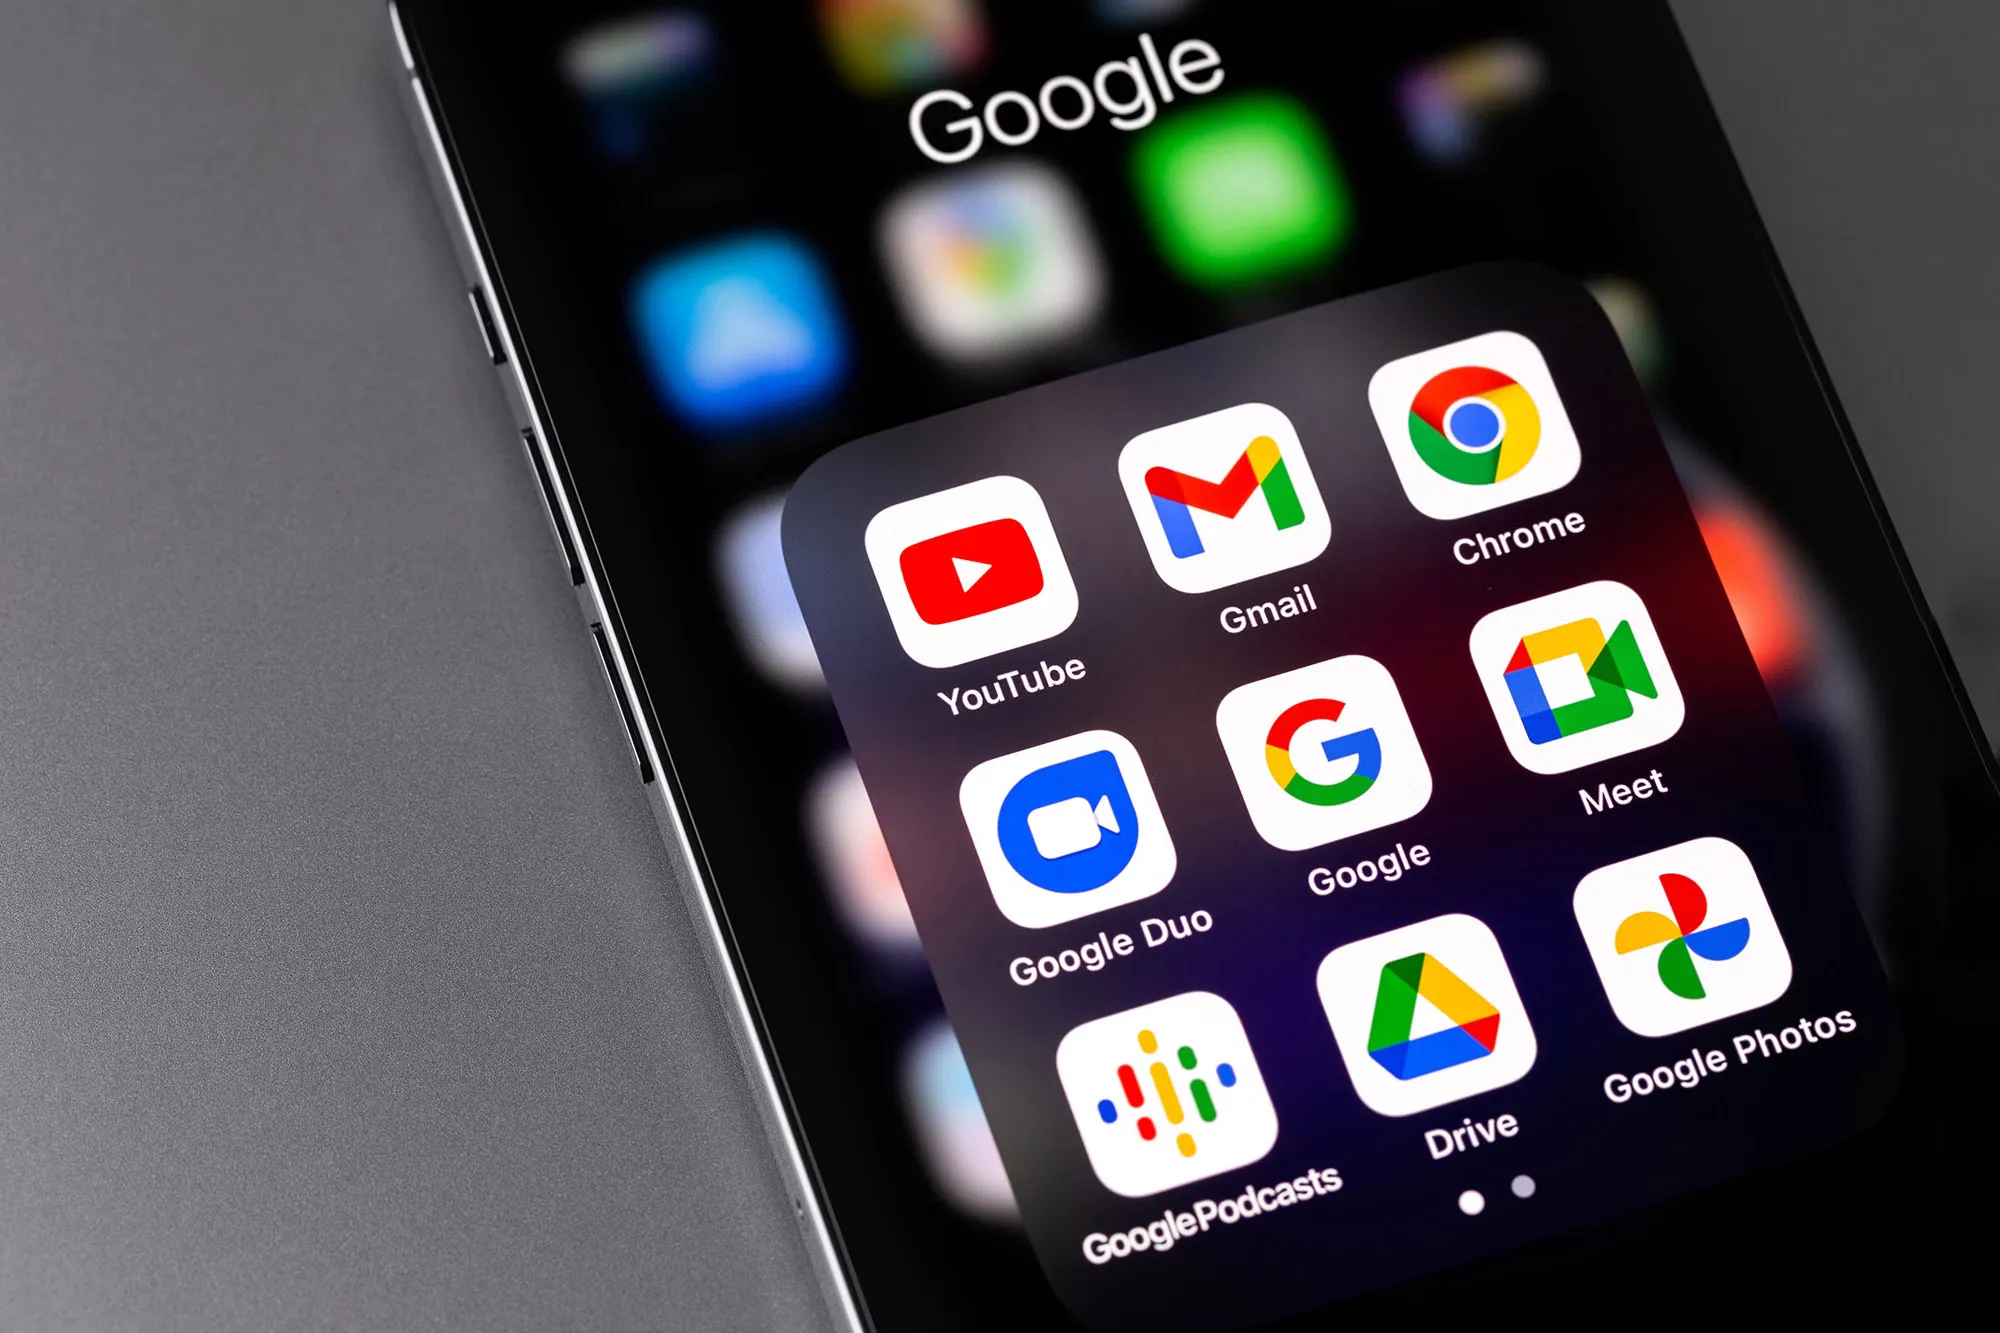 Icone delle app dei servizi Google (YouTube, Gmail, Chrome, Duo, Meet, Google Podcasts) sullo schermo dello smartphone.